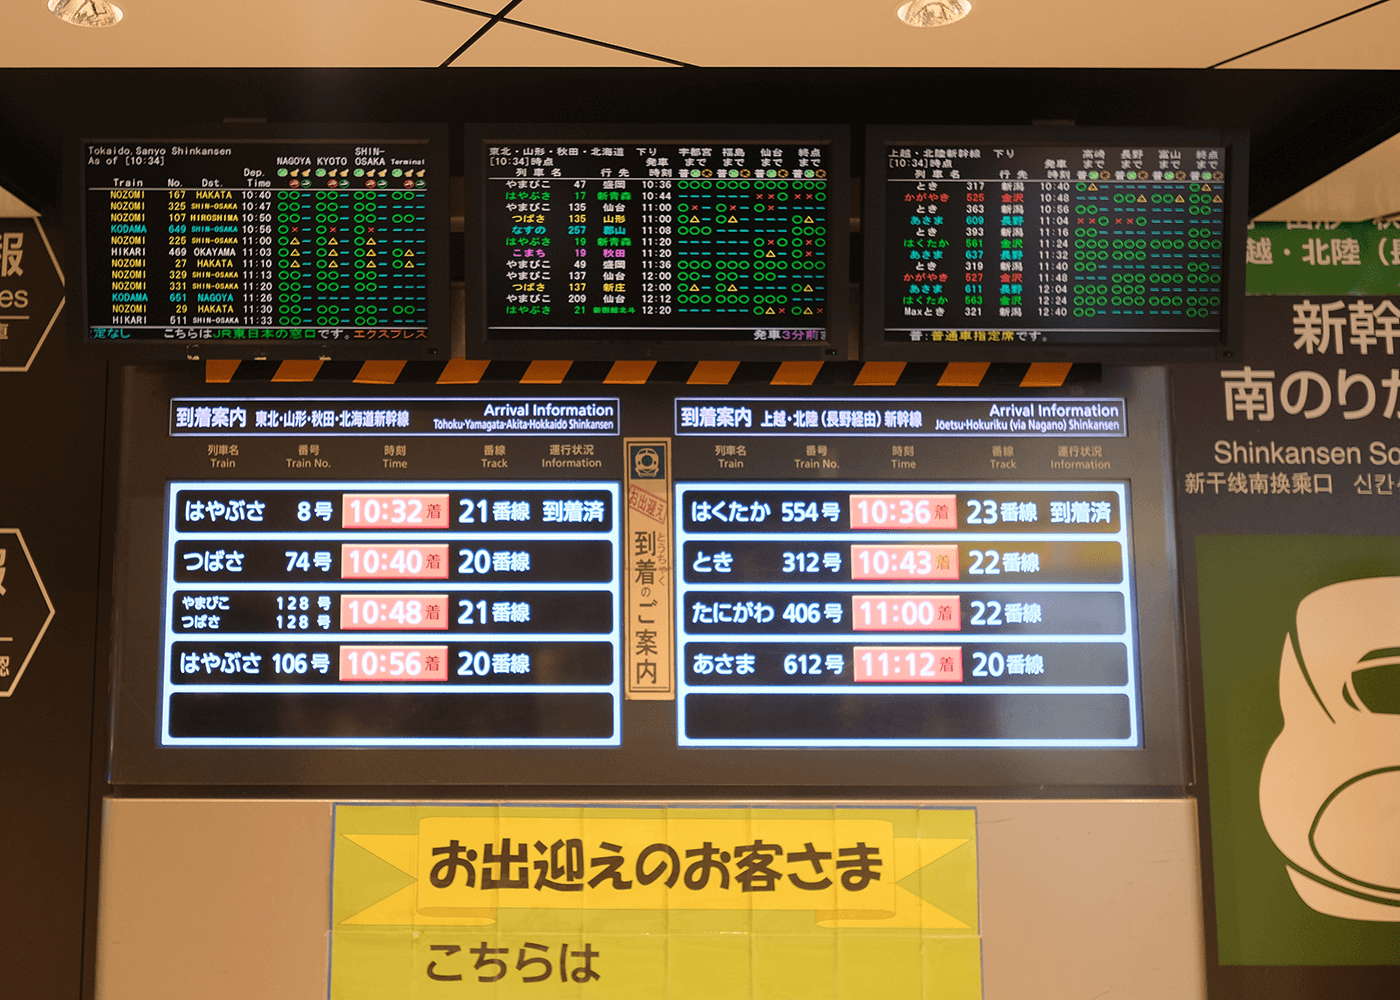 マイクロブルワリー を訪ねて（4）東京駅にて